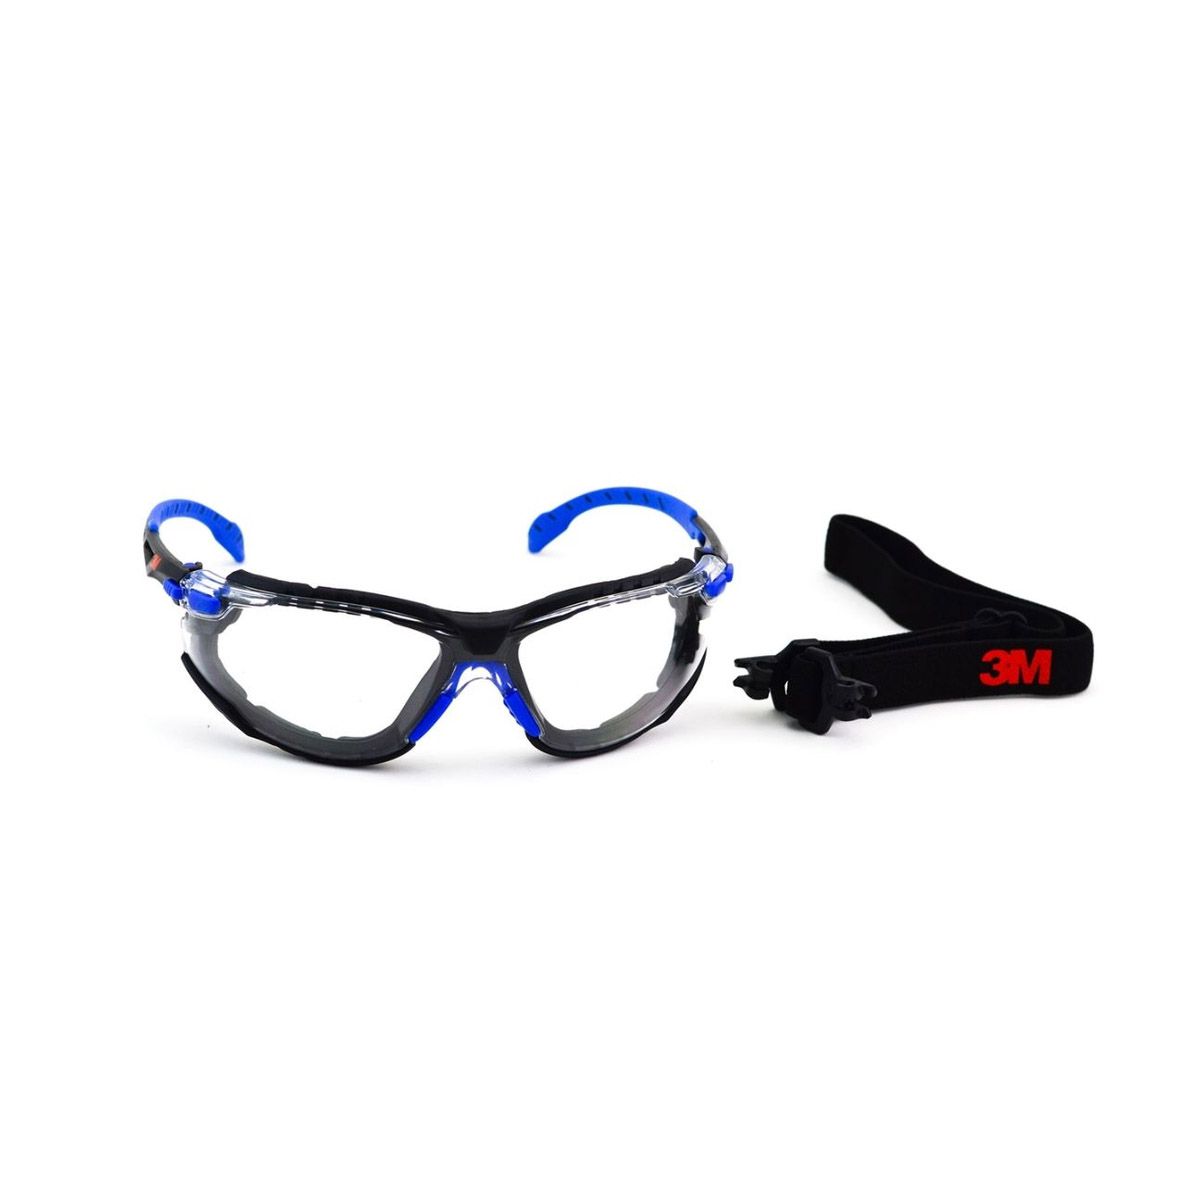 Oculos De Protecao 3m Solus 1000 Transparente Espuma Vedacao - BBRNET